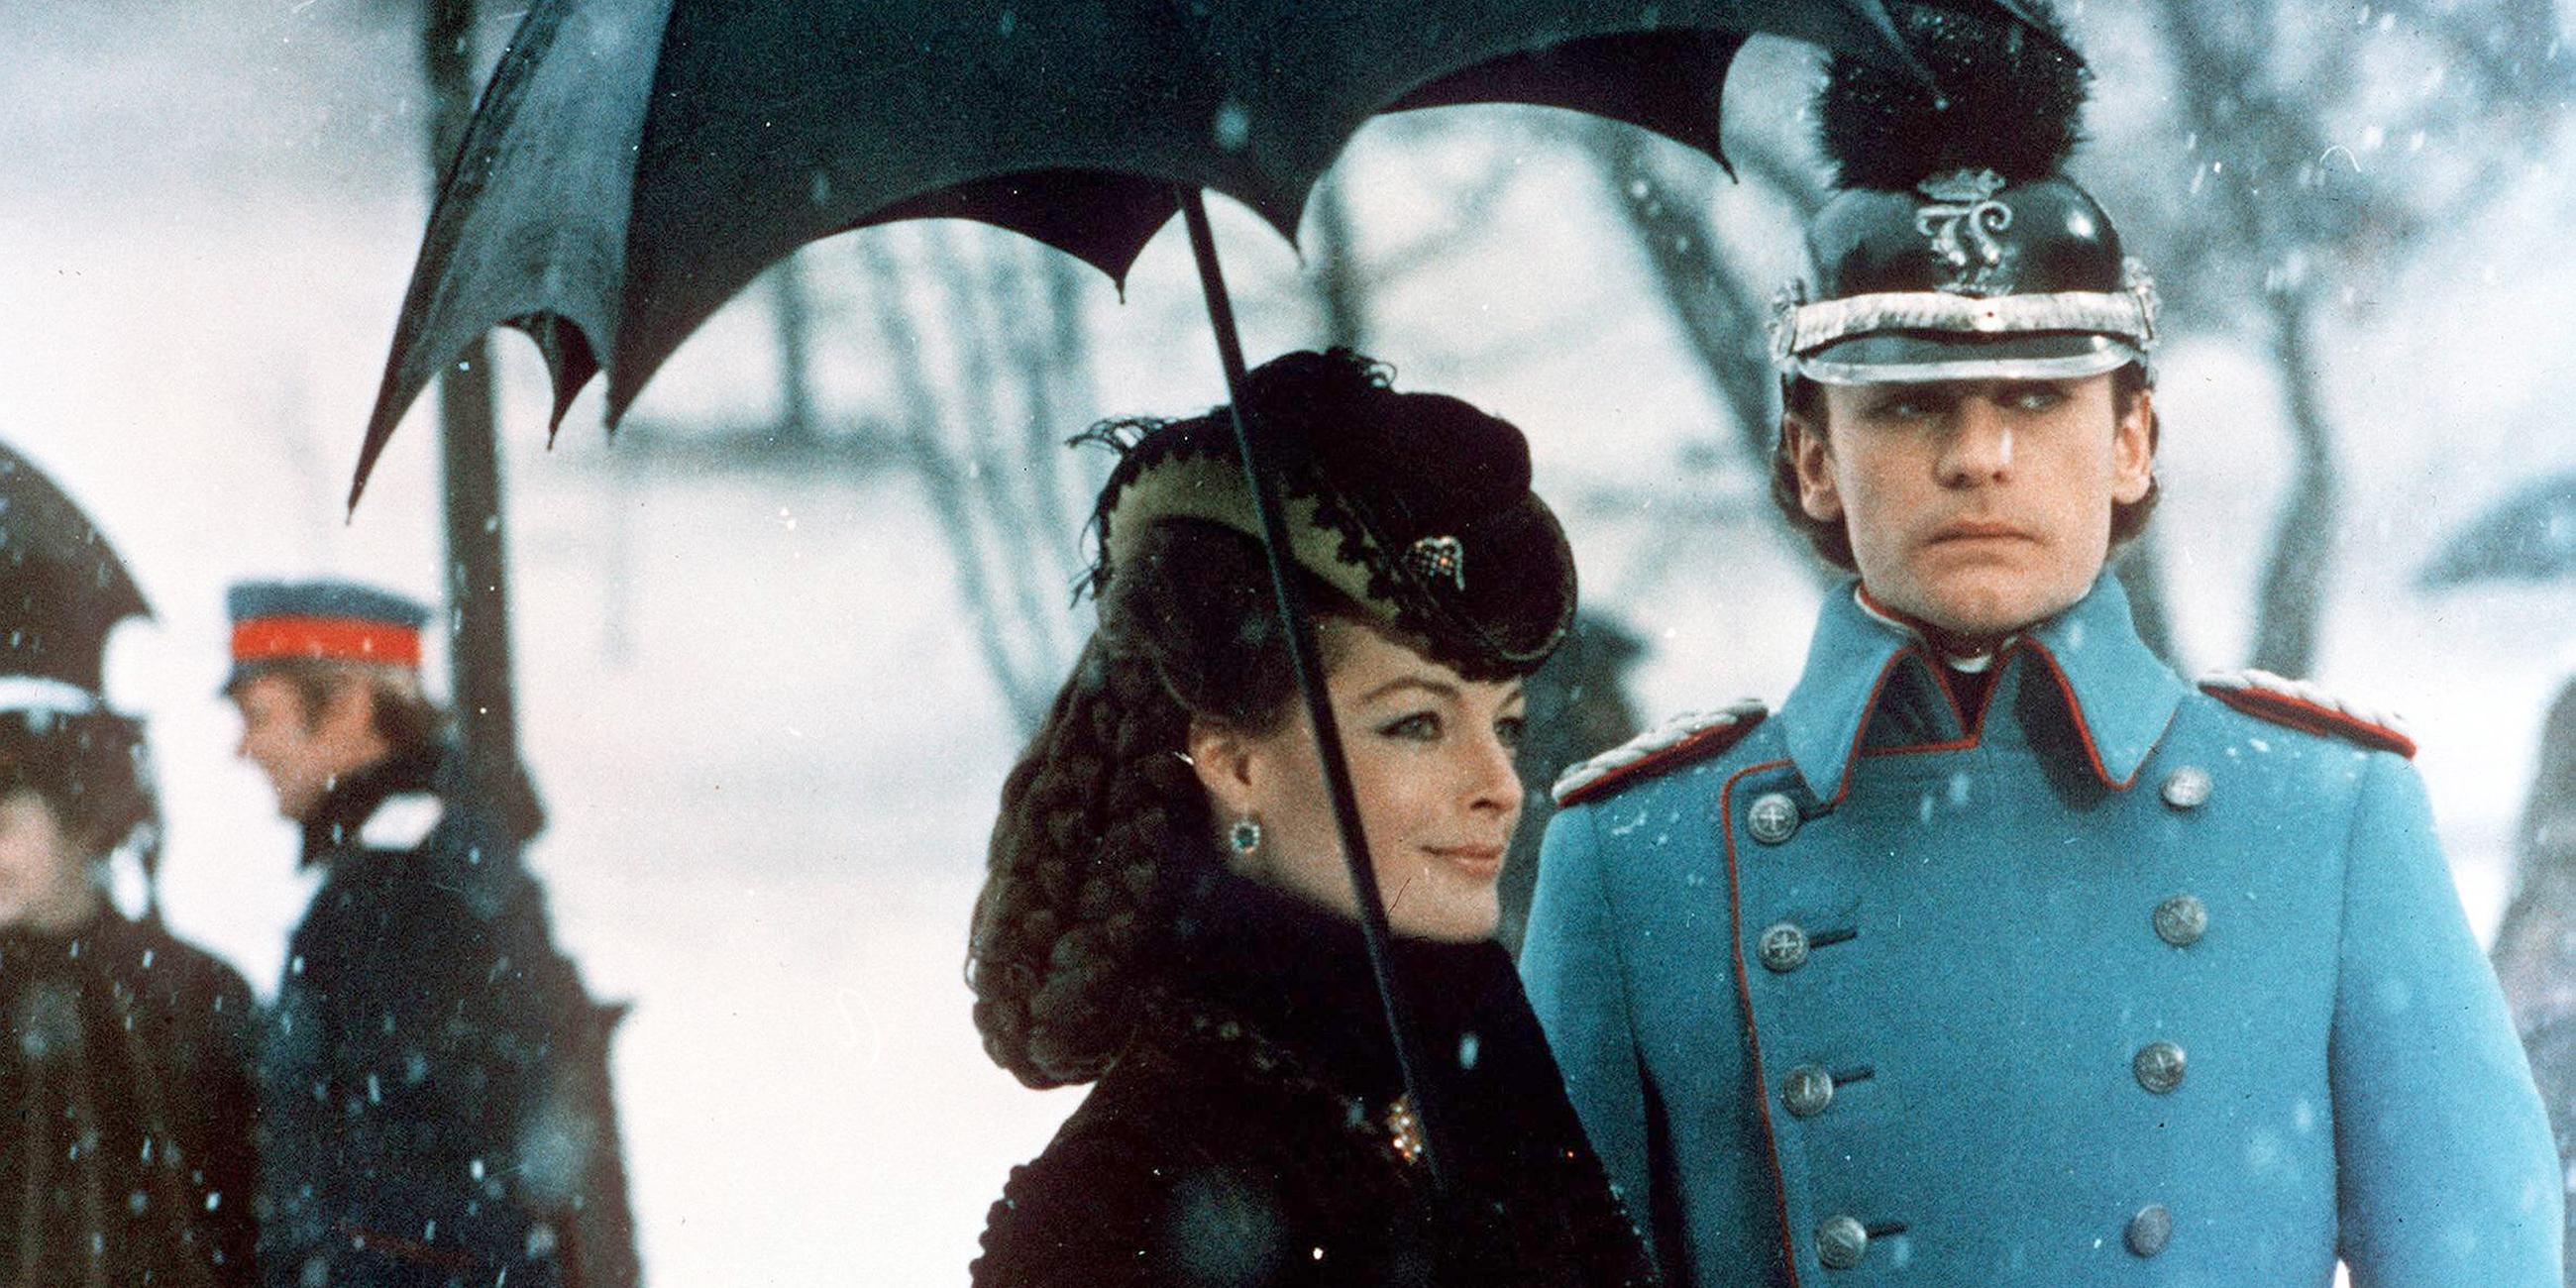 Helmut Berger als Ludwig II. mit Romy Schneider als Elisabeth von Österreich